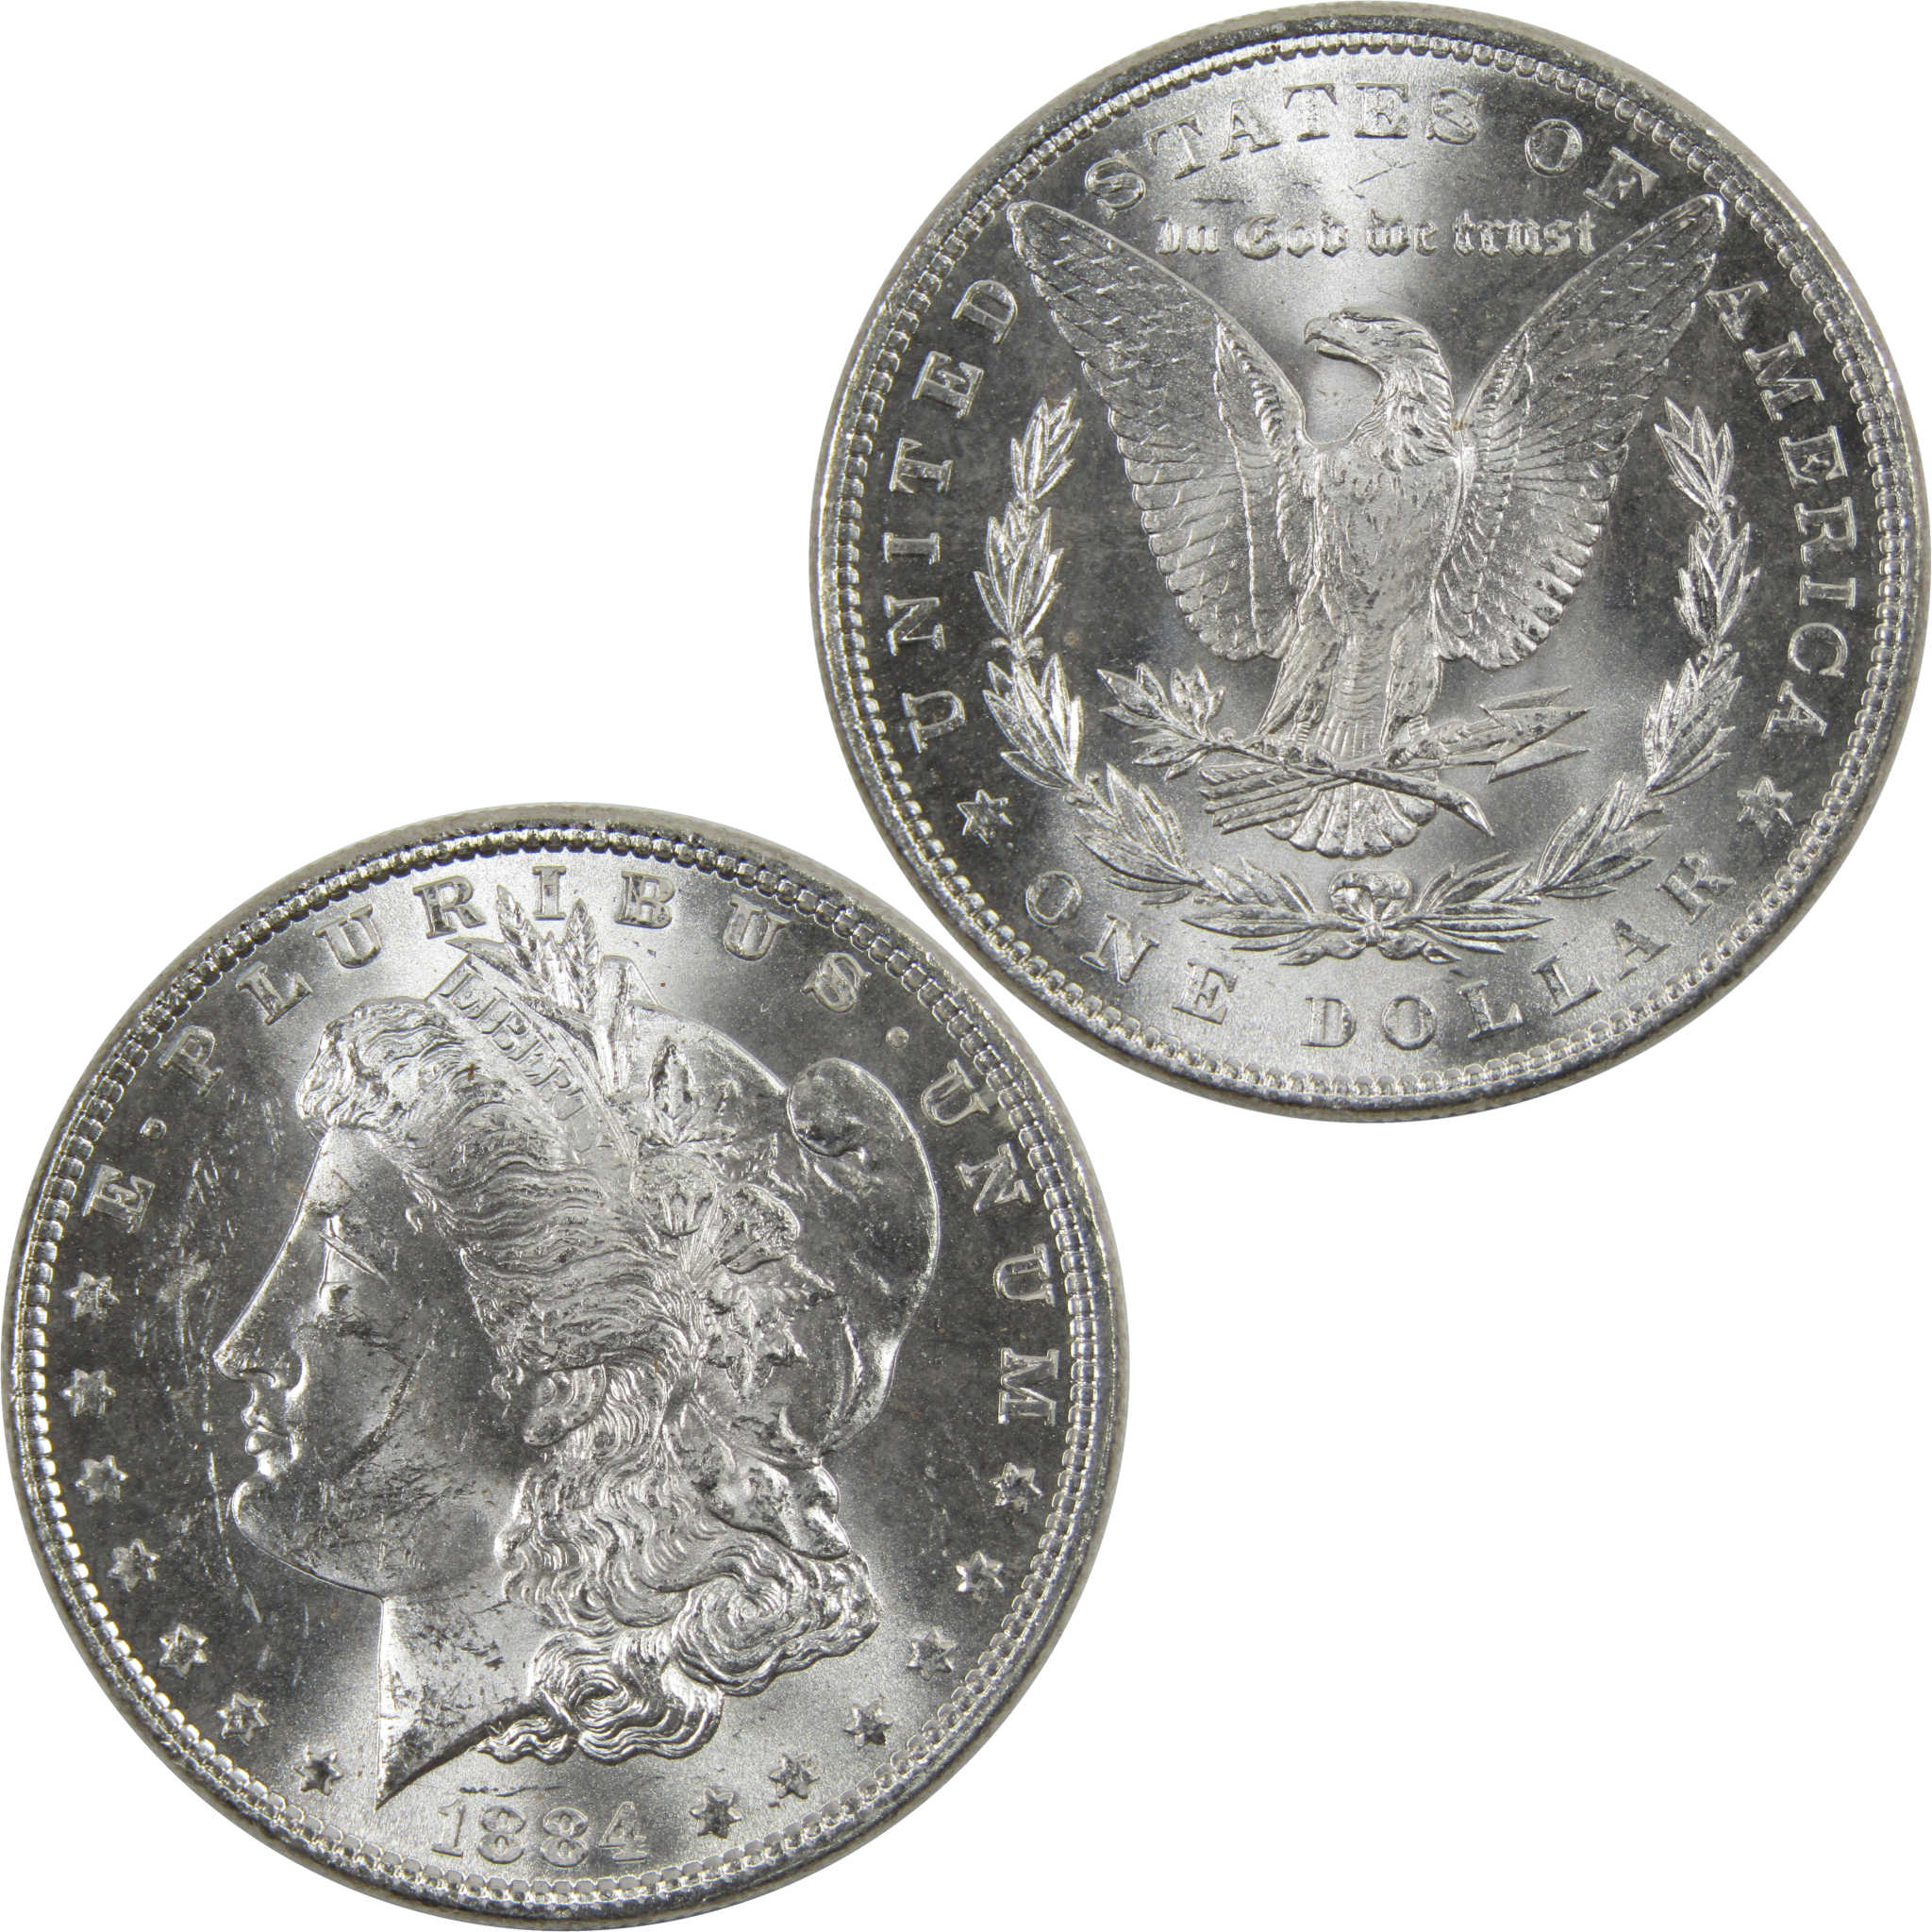 1884 Morgan Dollar BU Uncirculated 90% Silver $1 Coin SKU:I6015 - Morgan coin - Morgan silver dollar - Morgan silver dollar for sale - Profile Coins &amp; Collectibles